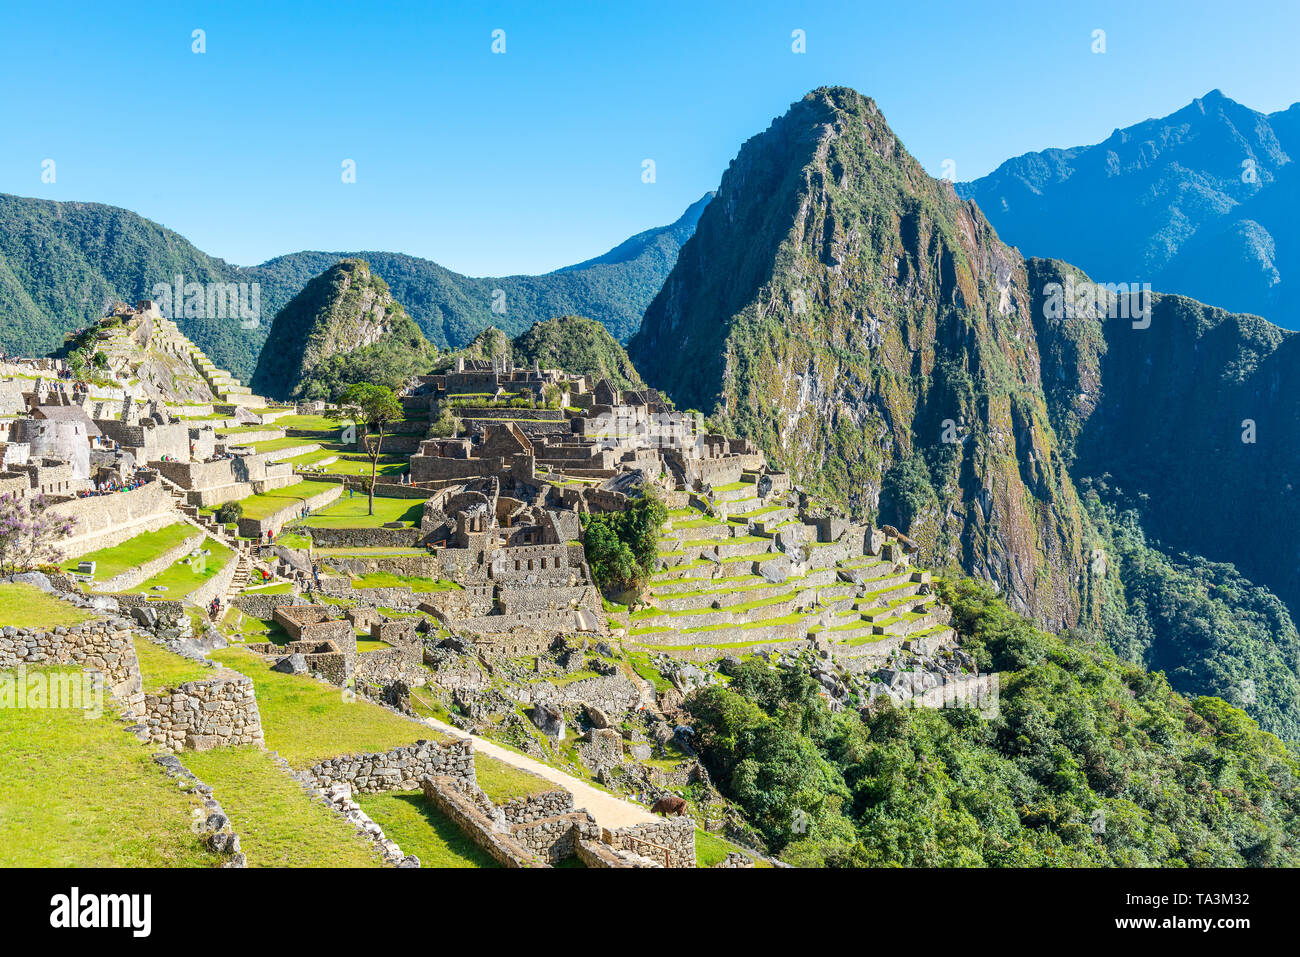 The Inca ruin of Machu Picchu in summer, Cusco region, Peru. Stock Photo